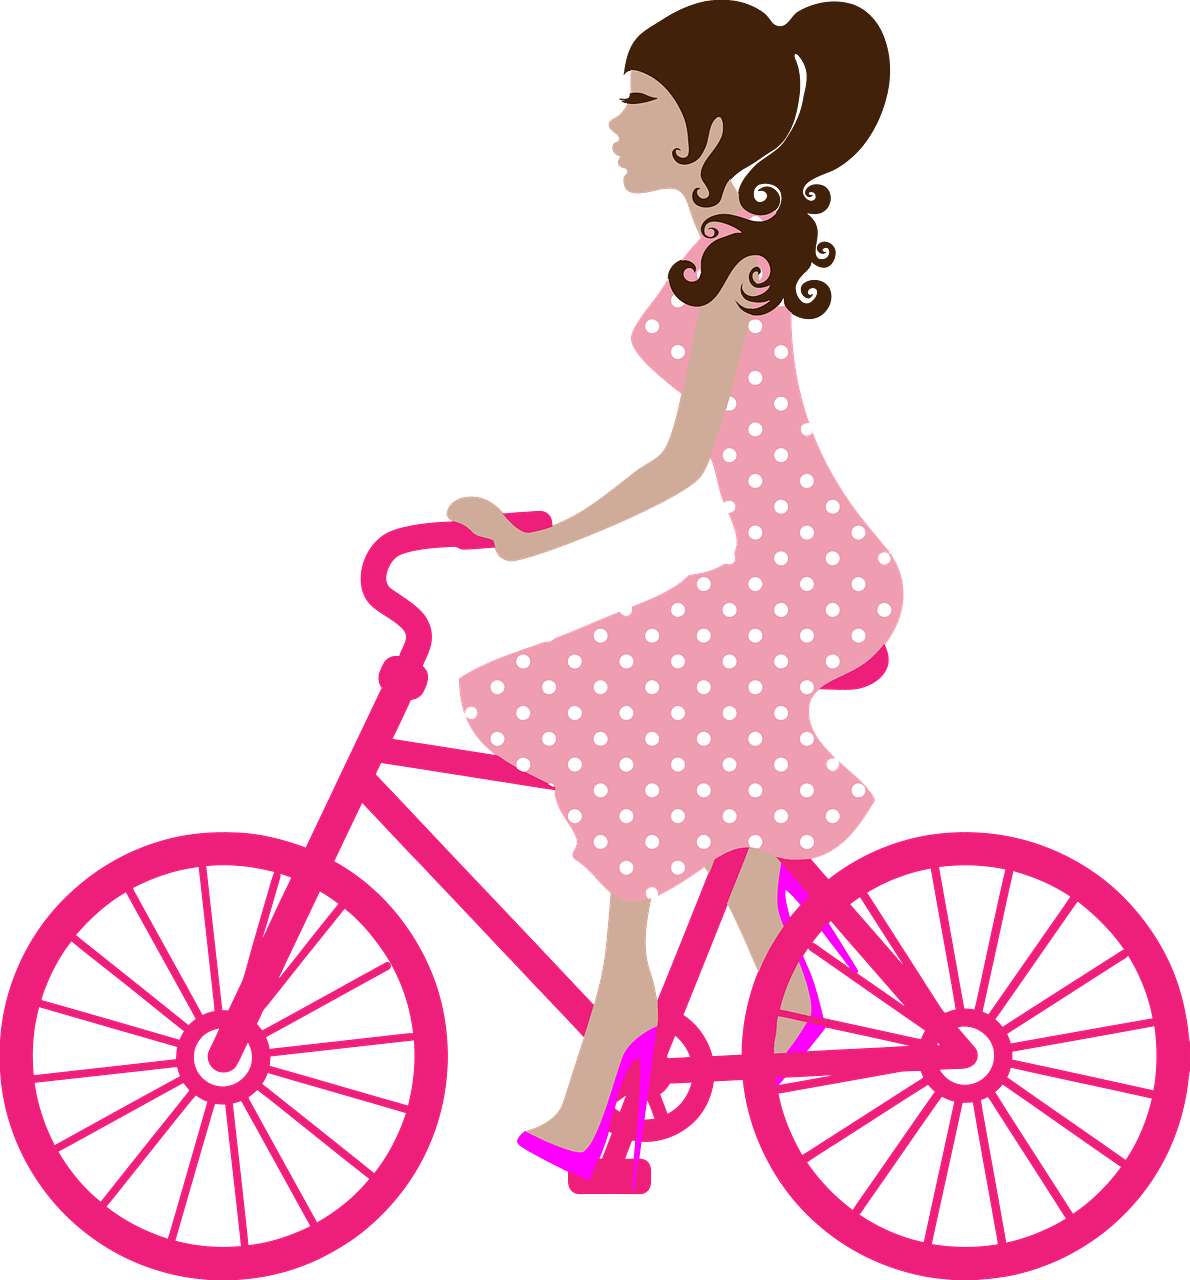 自転車に乗る女の子 イラスト 無料 イラスト